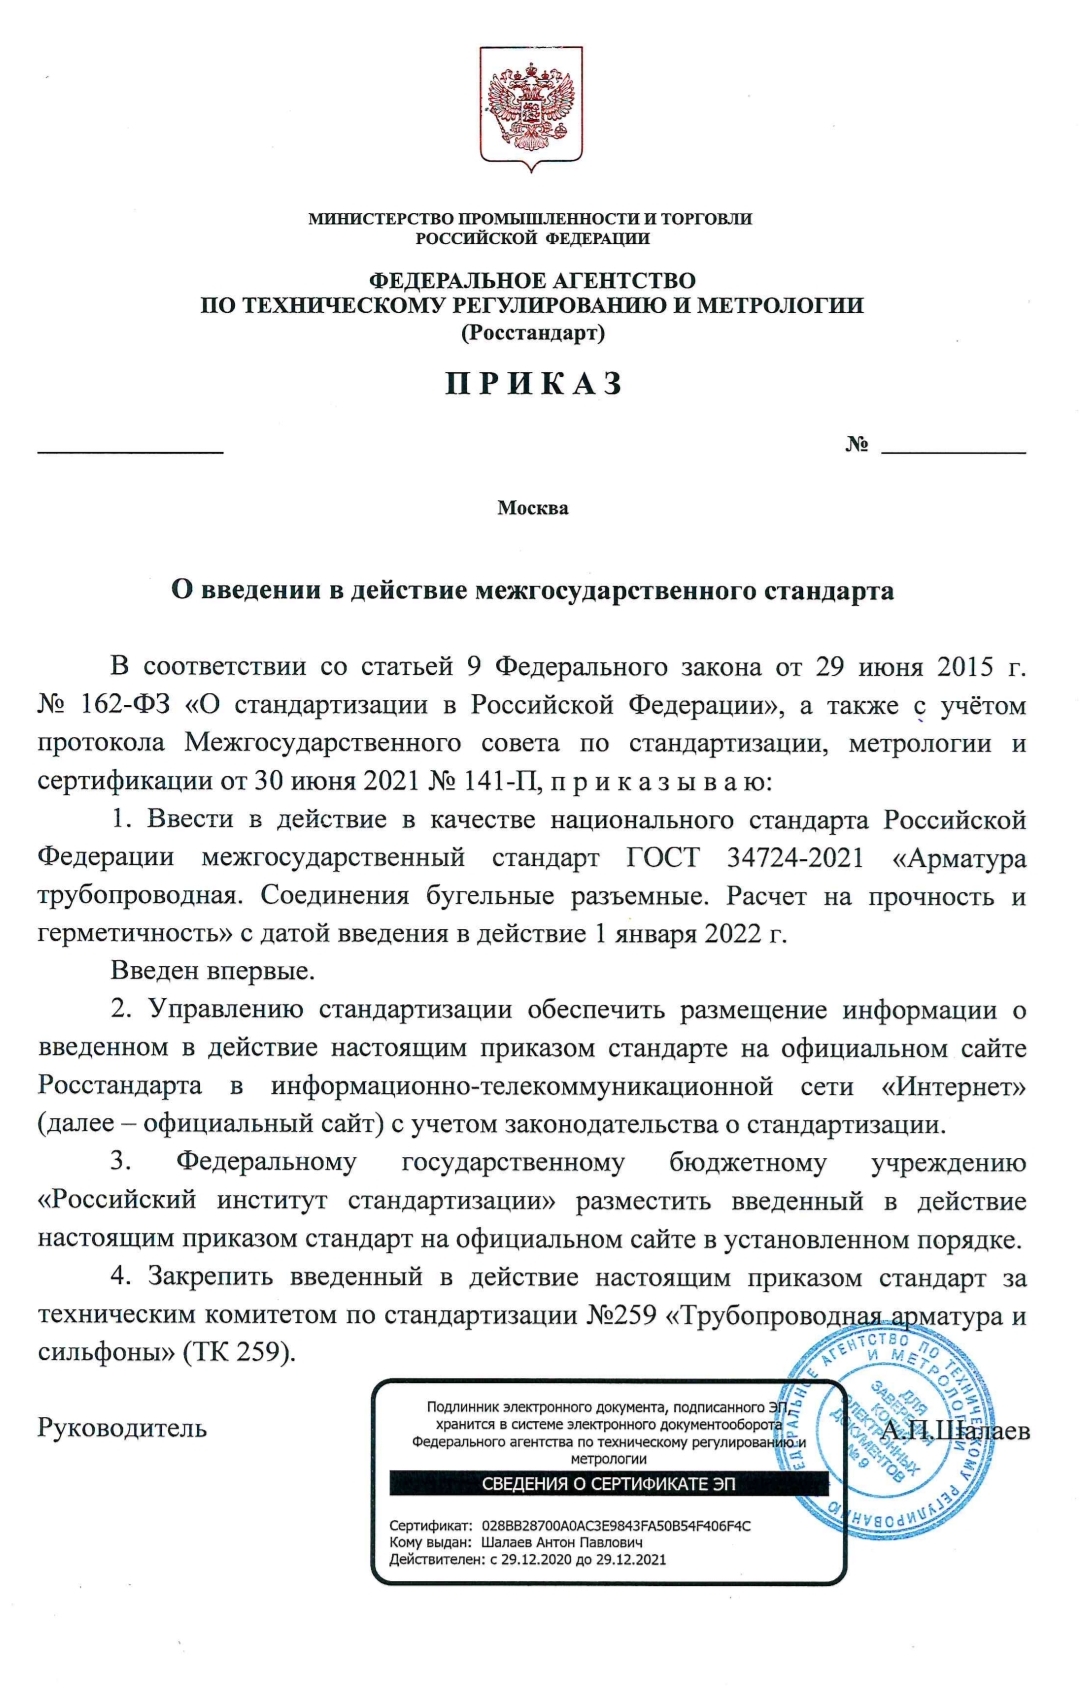 В 2022 году начнется действие стандарта «ИркутскНИИхиммаша» об использовании бугельных соединений в трубопроводной арматуре